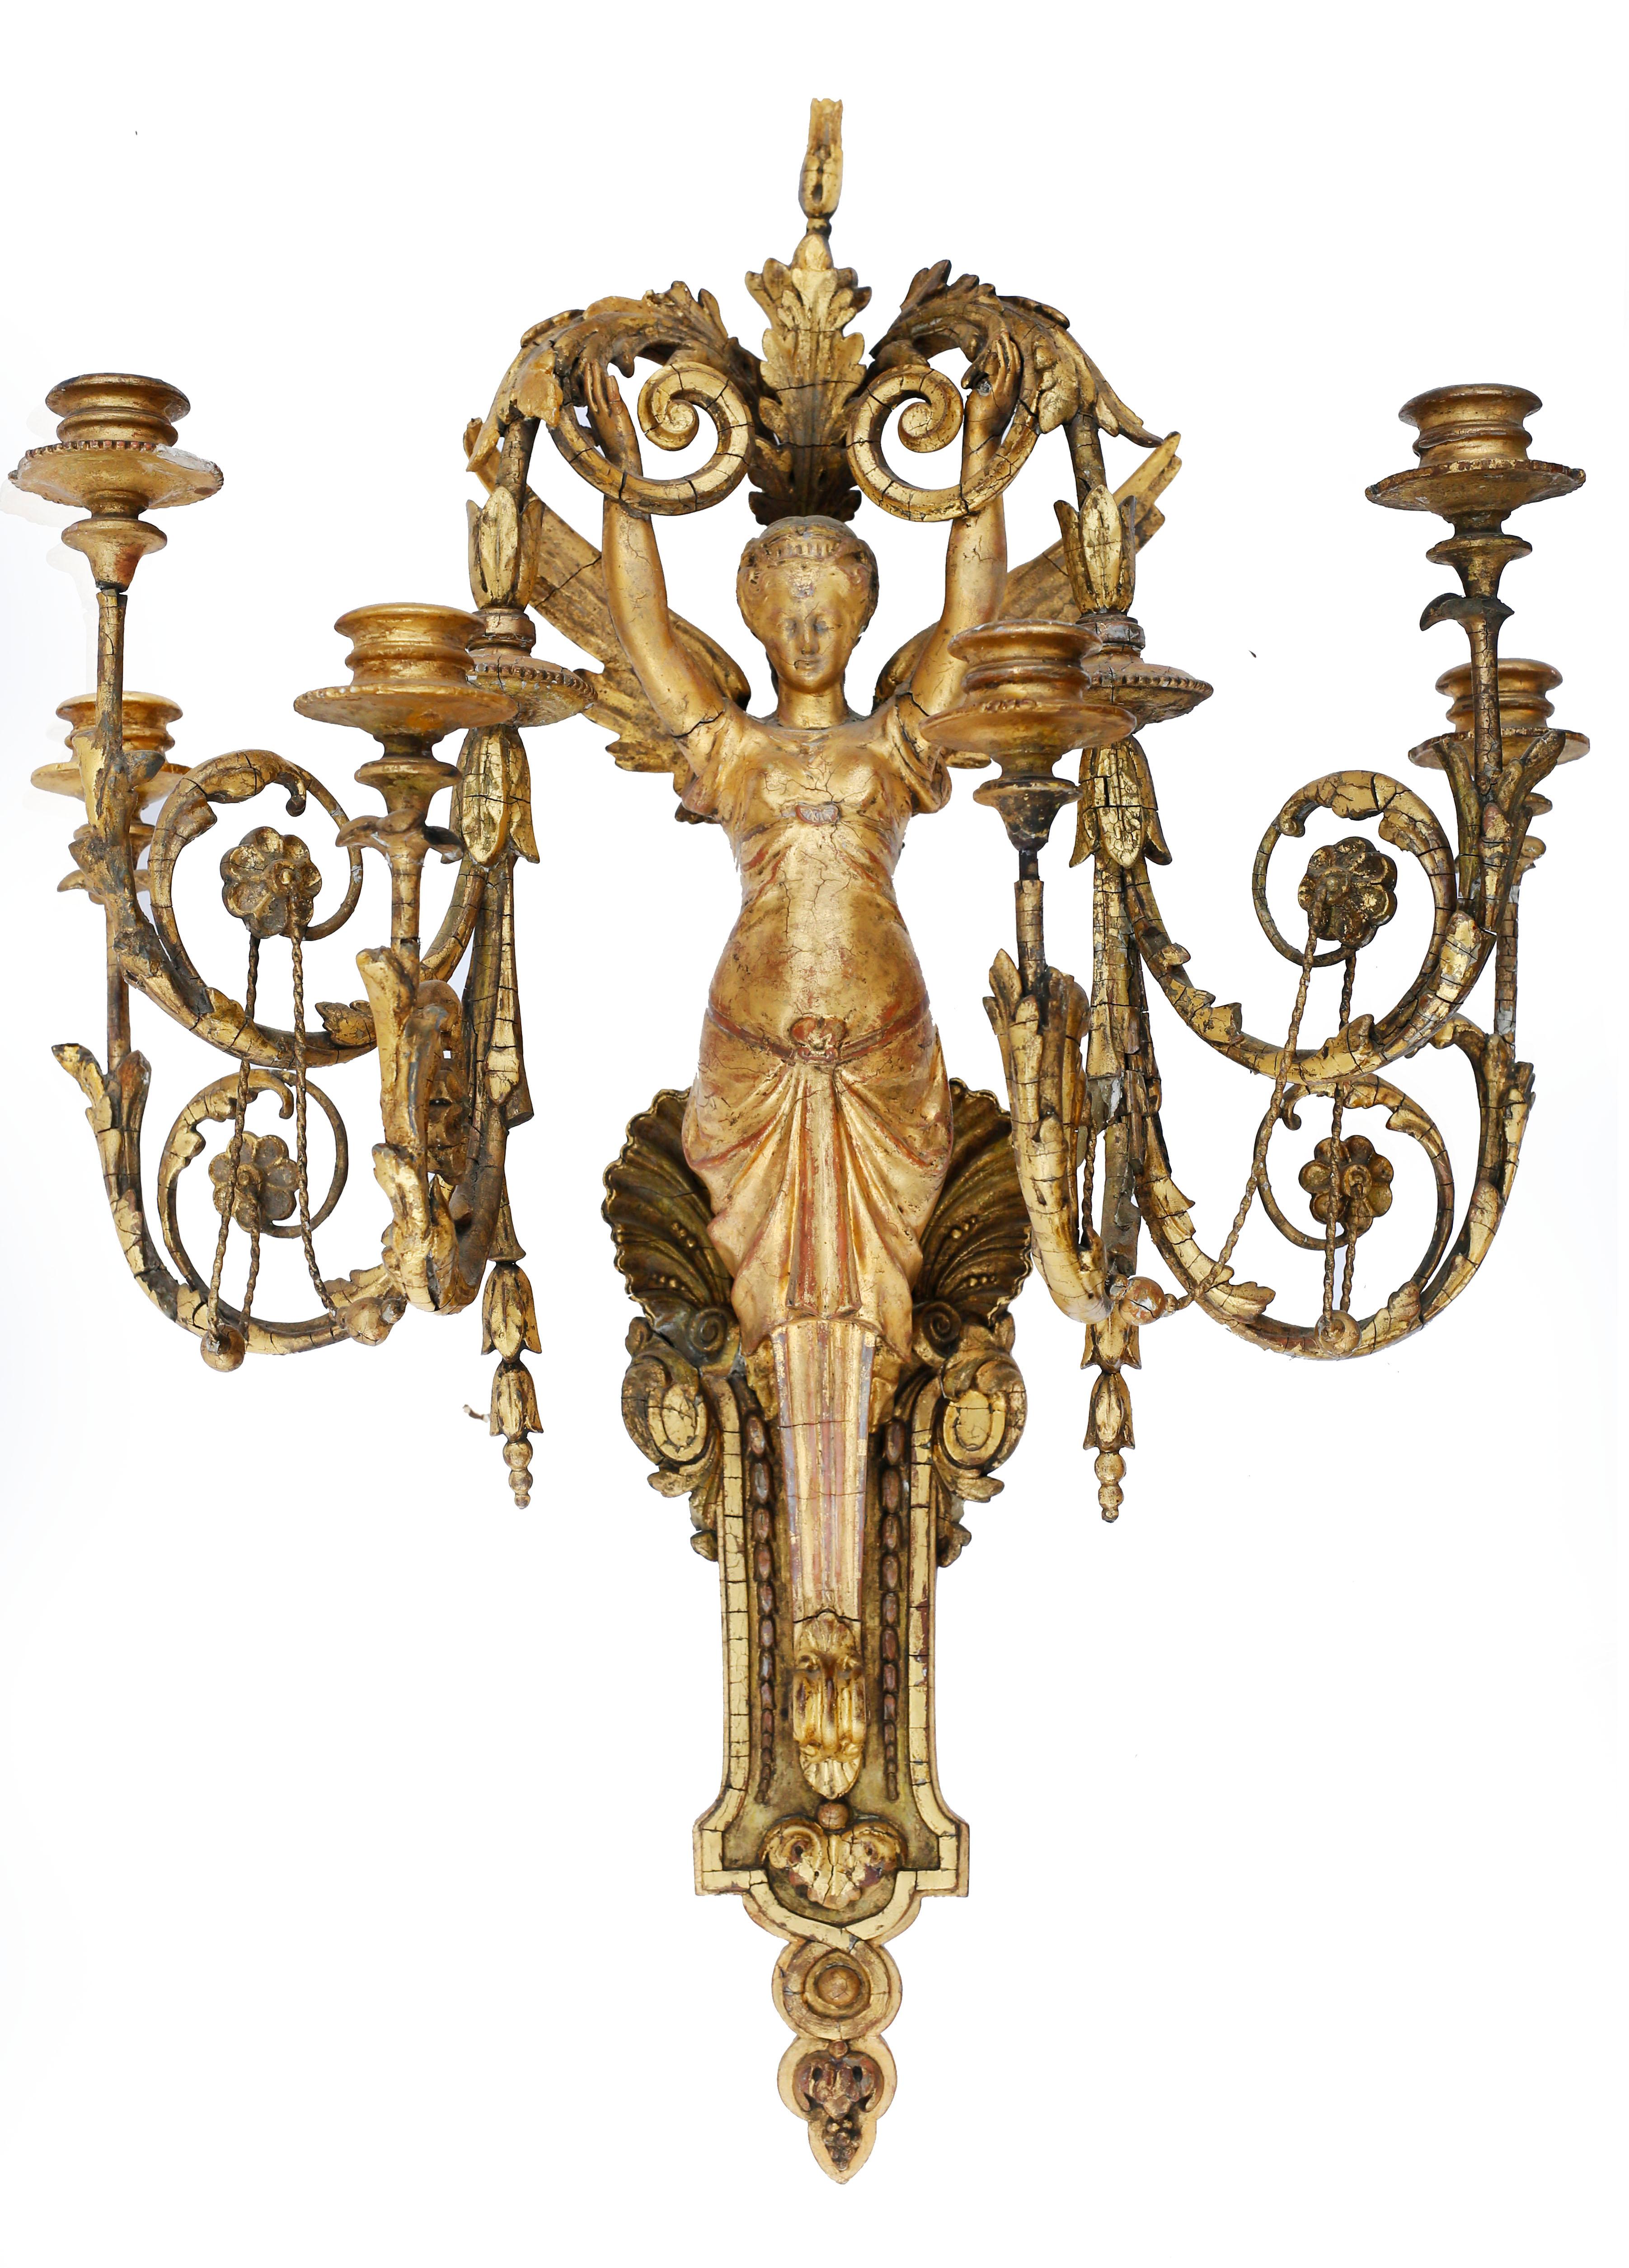 Ein exquisites Paar vergoldeter Wandleuchter mit sechs Lampen. Die Leuchte wird von der Figur eines geflügelten Seraphim getragen, dessen drapierte untere Hälfte in eine geformte Konsole und einen Akanthus-Anhänger übergeht. Die obere Hälfte des